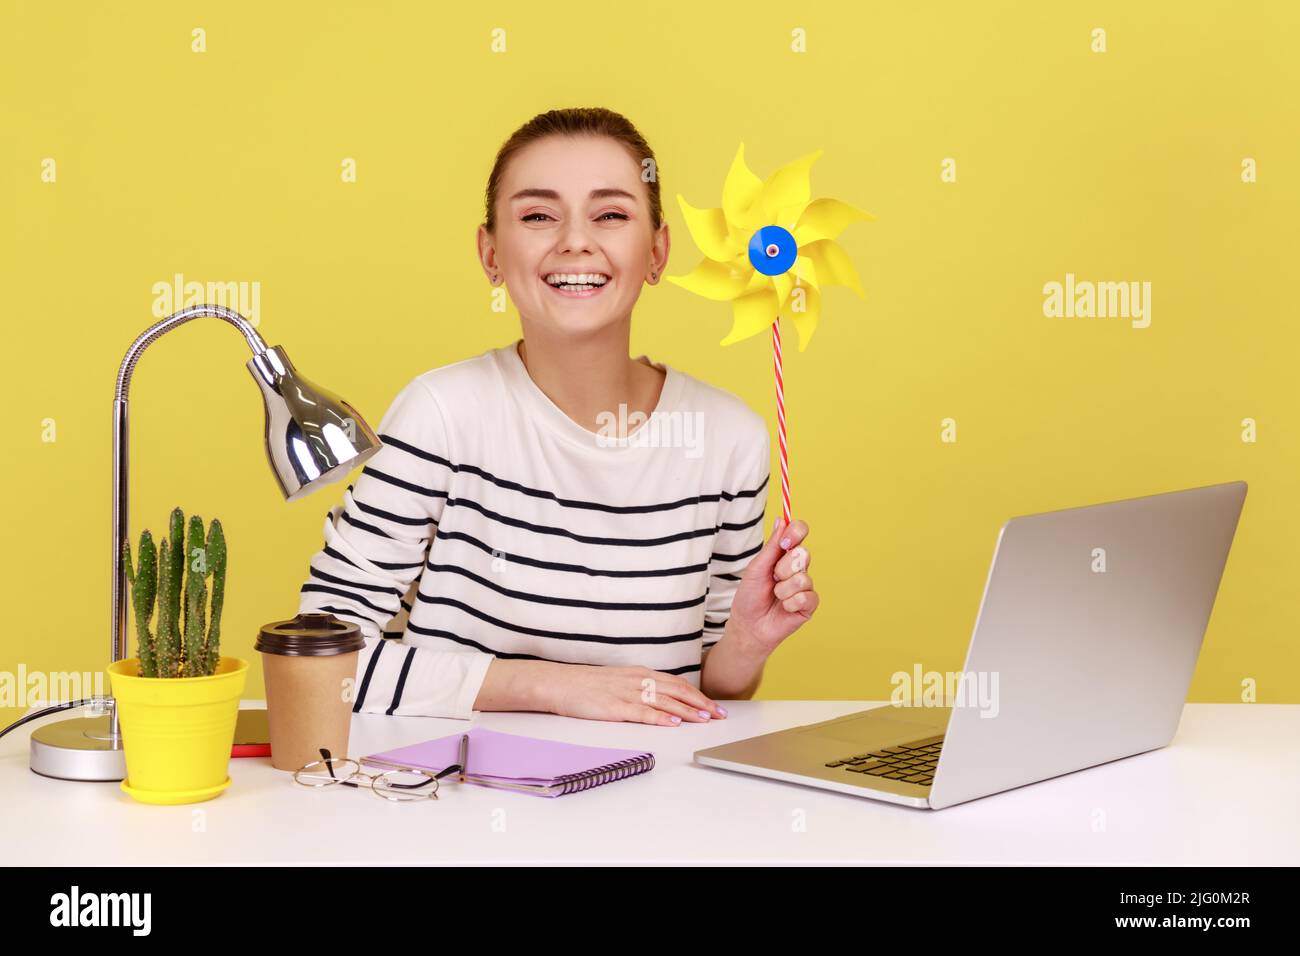 Origami molino de mano. Retrato de feliz sonrisa despreocupada mujer sosteniendo molino de viento de papel, juguete de rueda de alfiler en palo, divertirse en el lugar de trabajo. Estudio de interior grabado aislado sobre fondo amarillo. Foto de stock